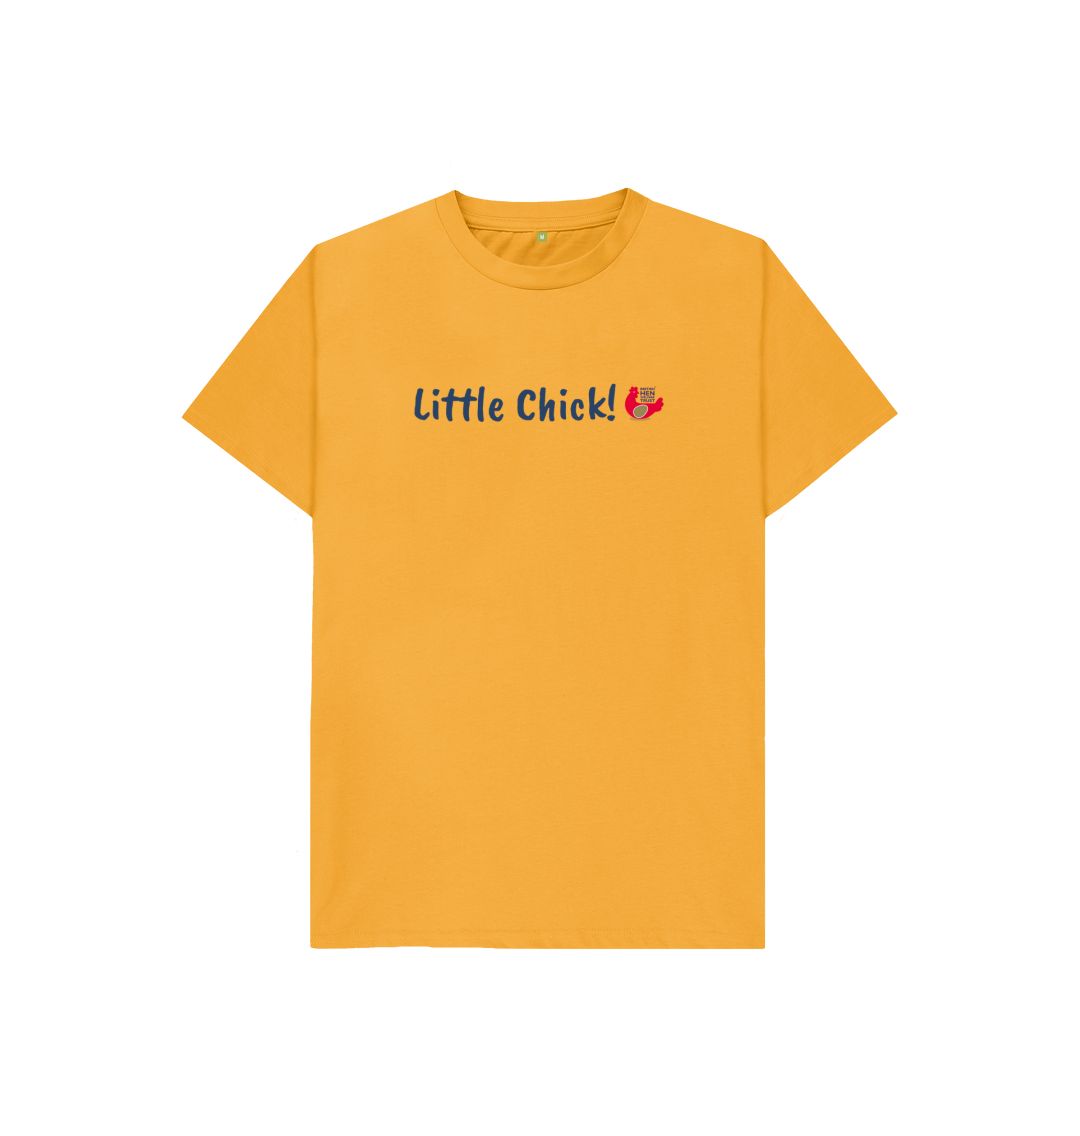 Mustard Little Chick! Kids Unisex Short Sleeve T-Shirt